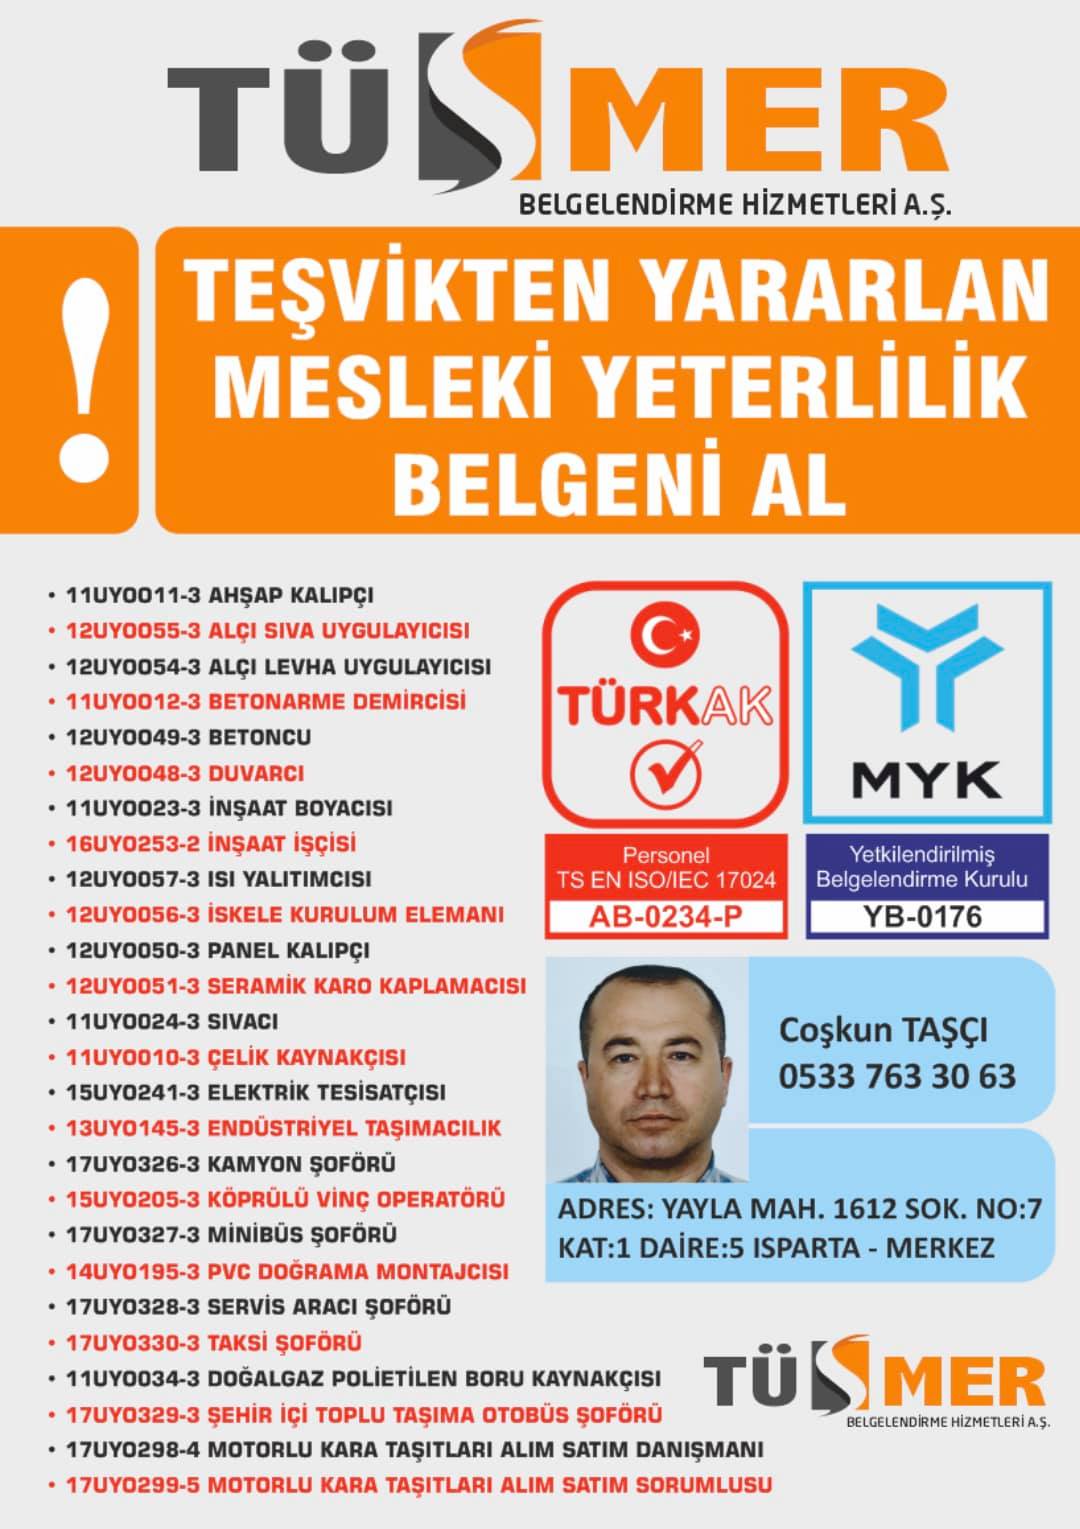 MYK MESLEKİ YETERLİLİK BELGESİ Fenerbahçe Kadıköy İstanbul